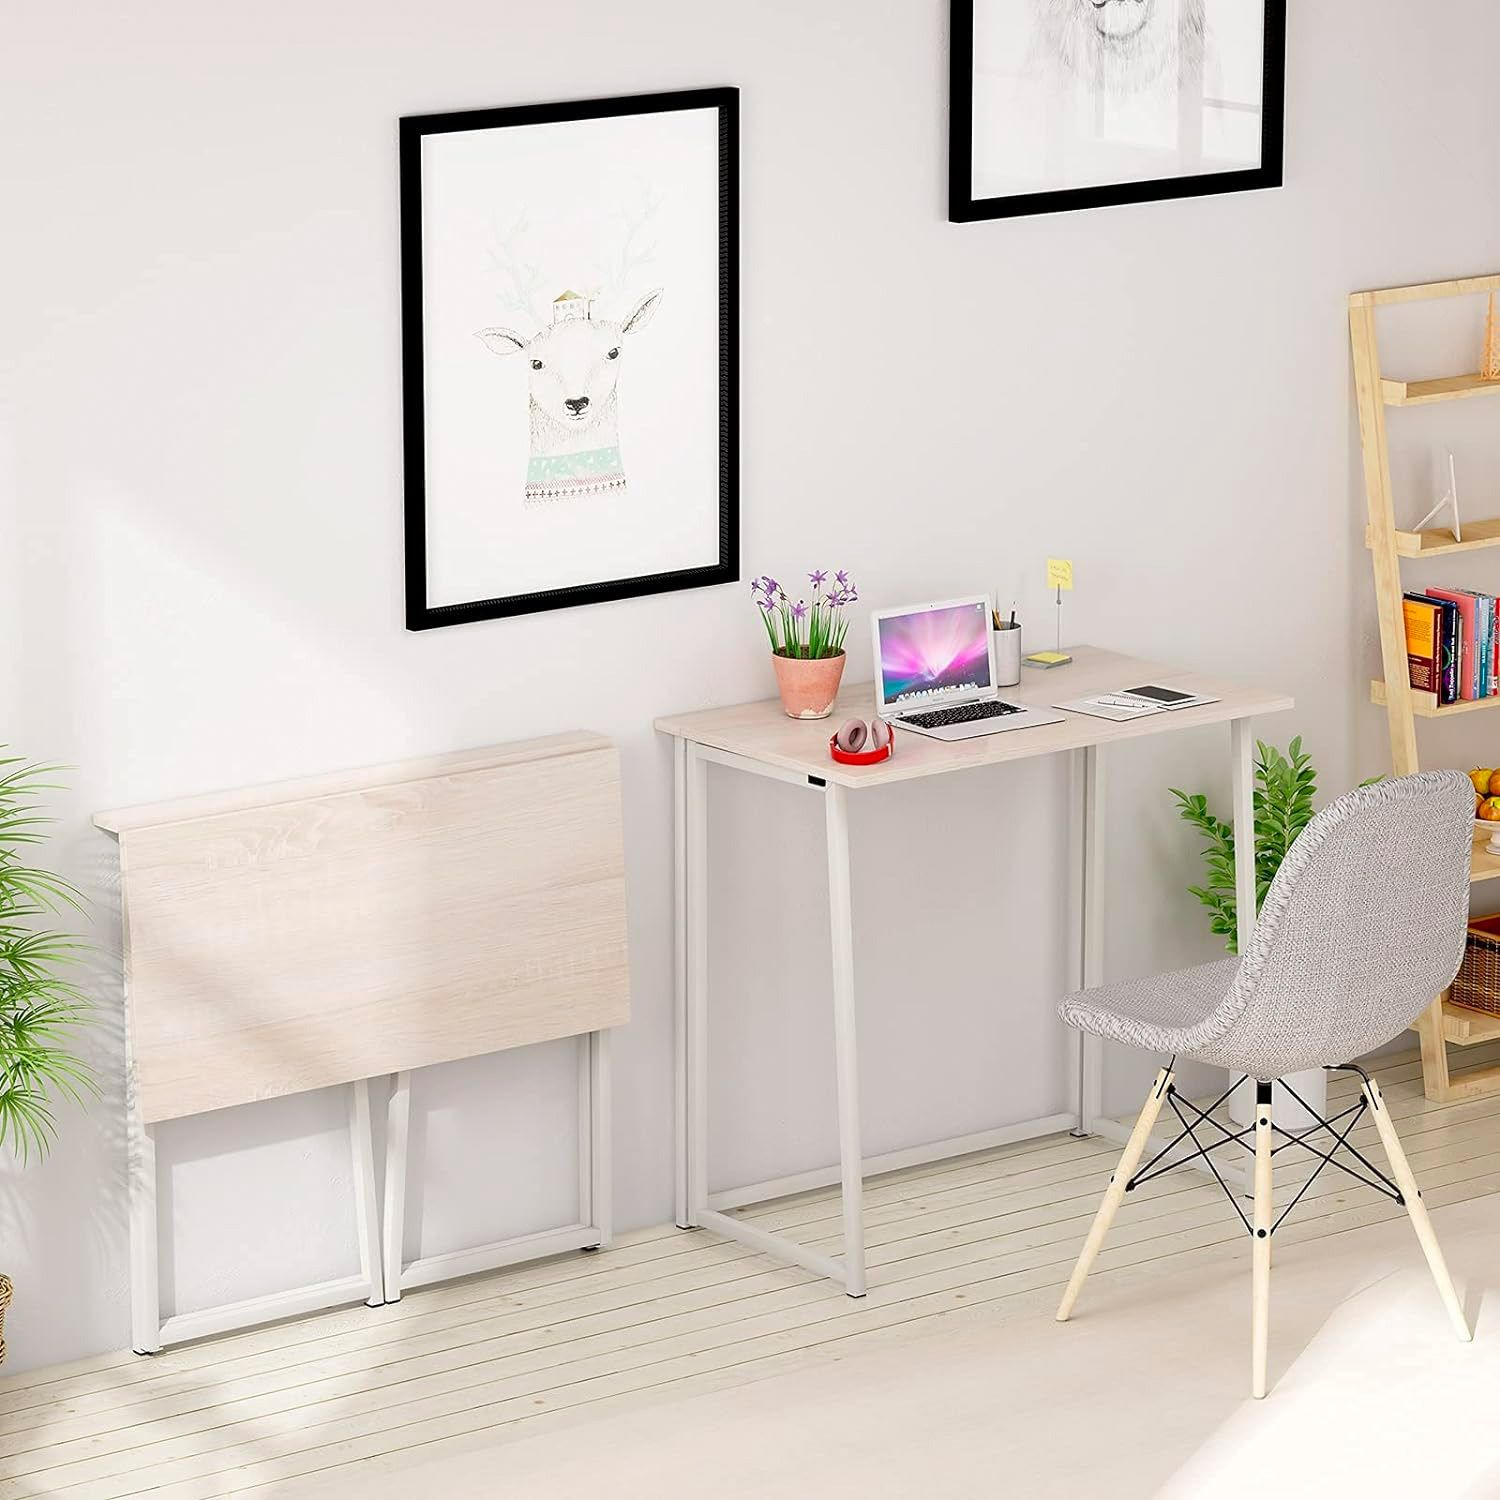 Mesas abatibles para pisos pequeños, ¡qué solución!